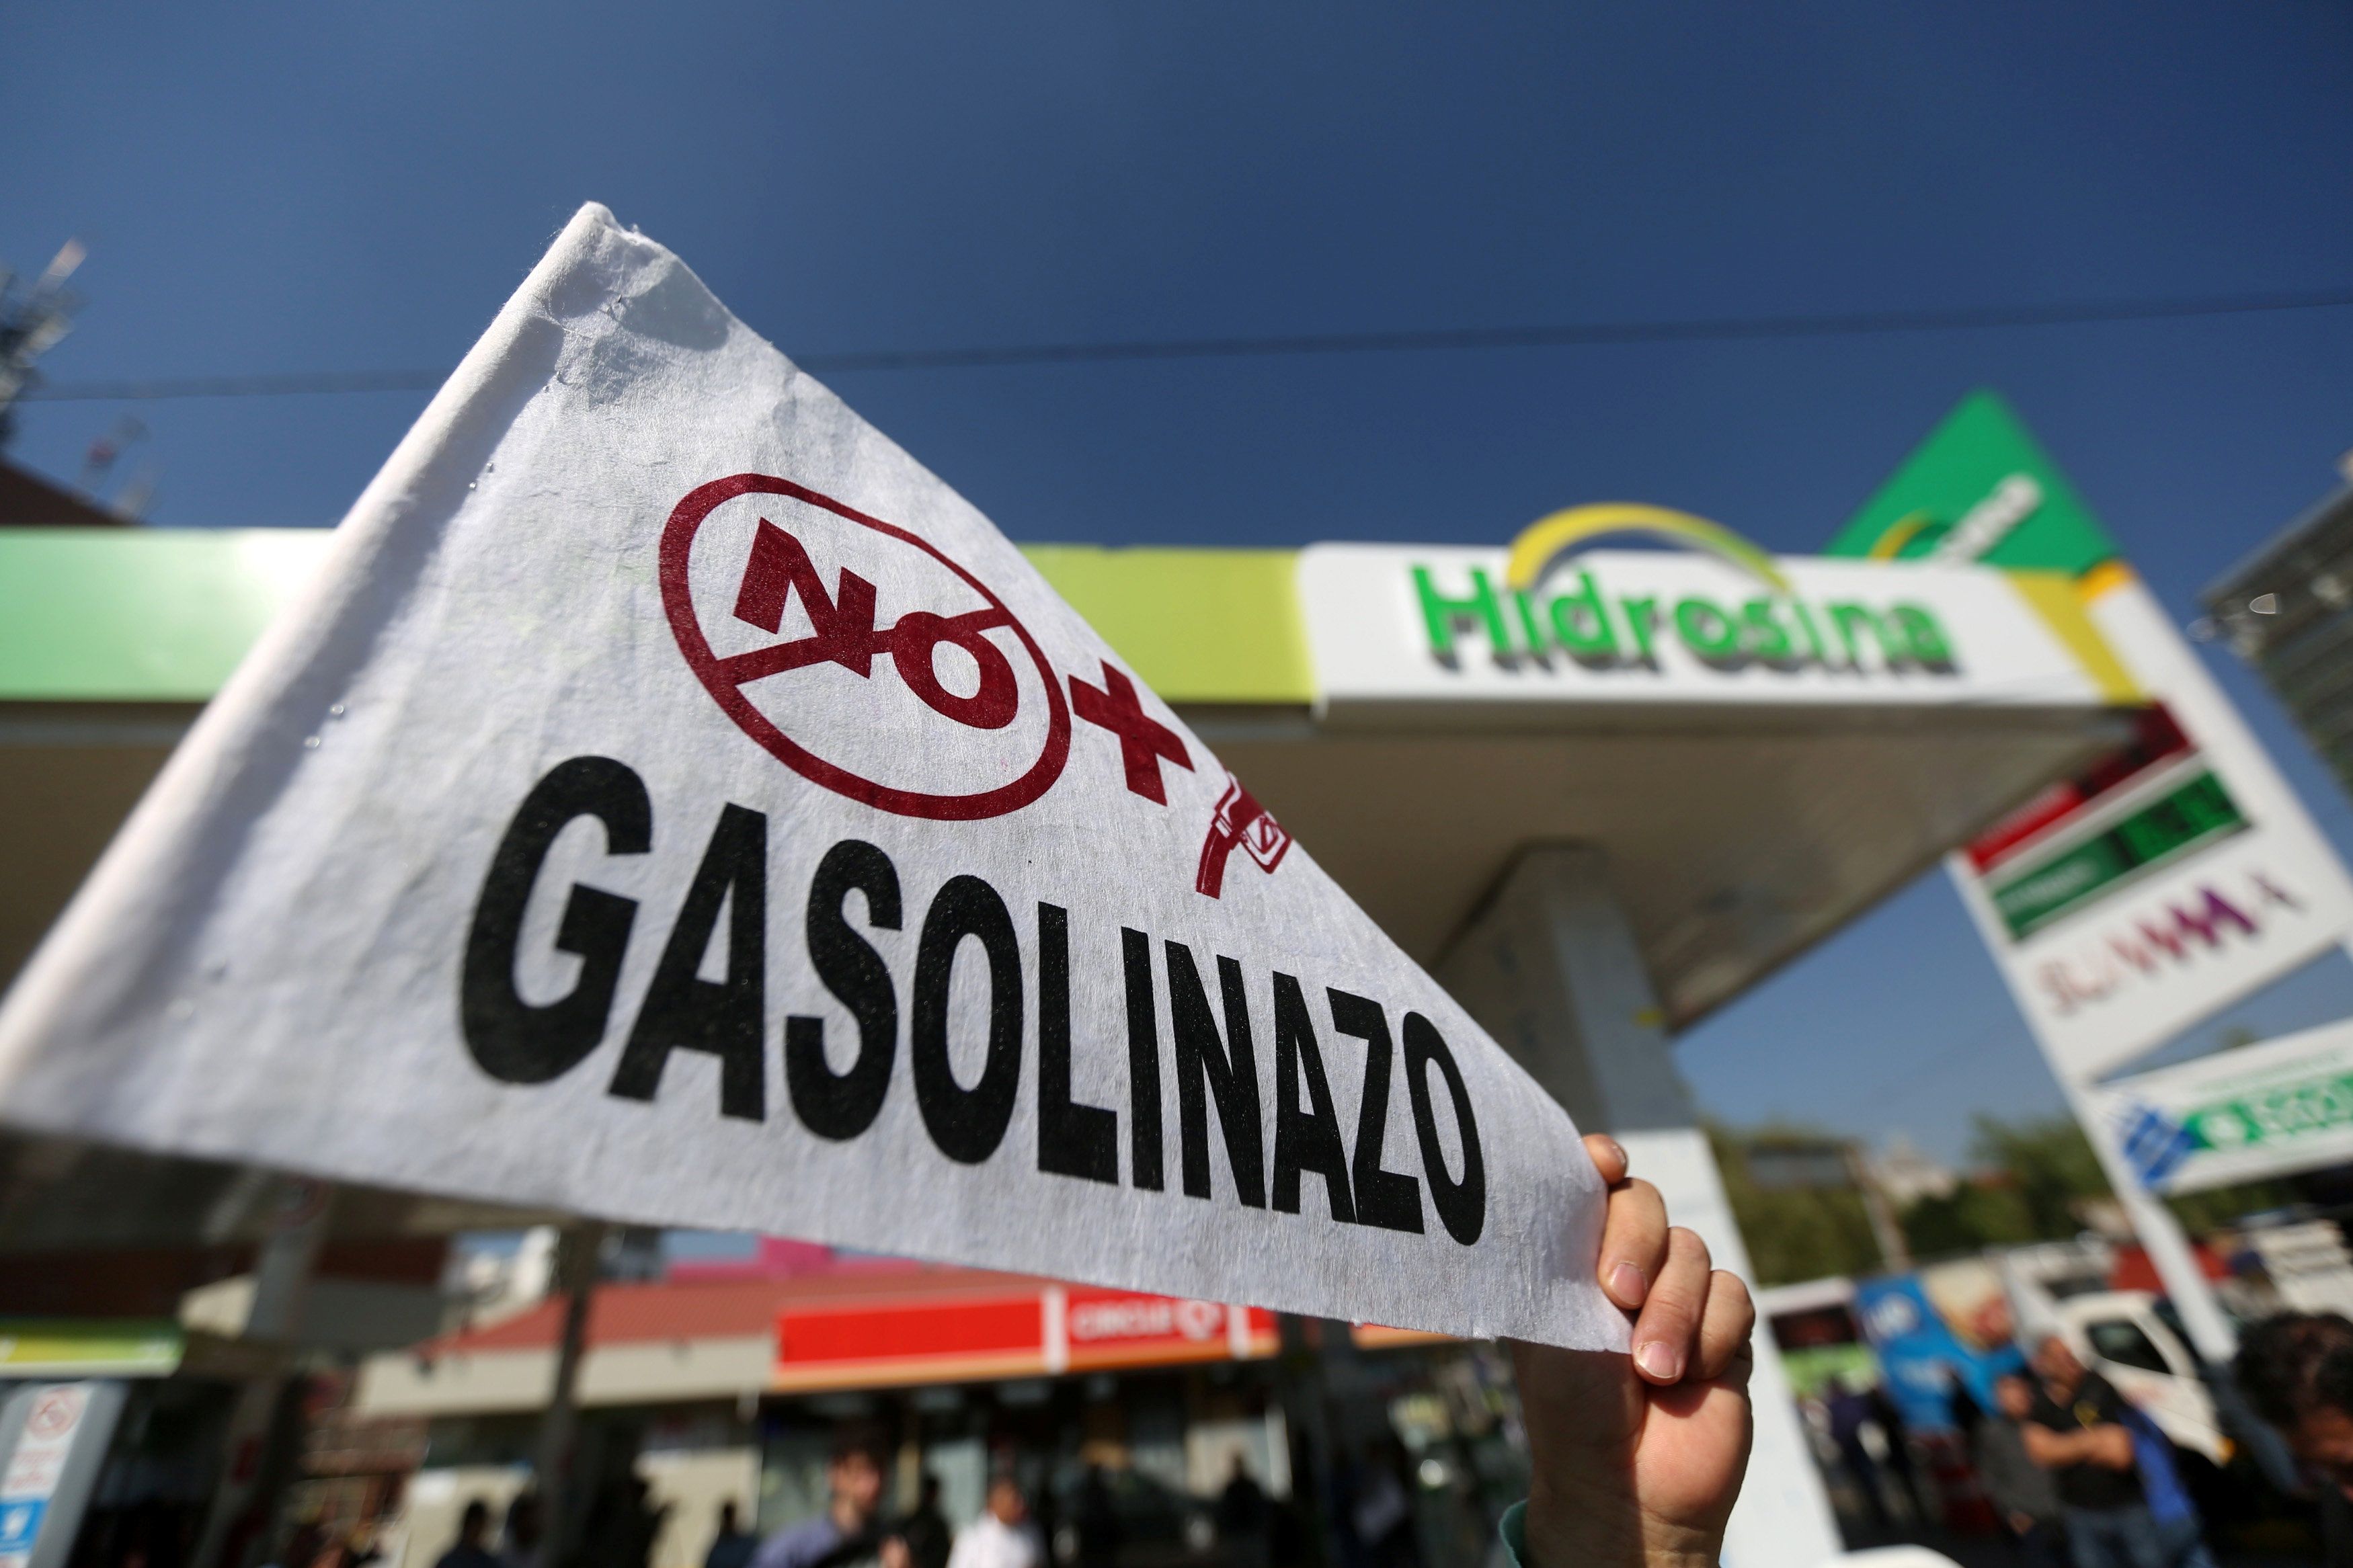 ¿El aumento del precio de la gasolina en México es para proteger al pueblo o es una medida neoliberal?